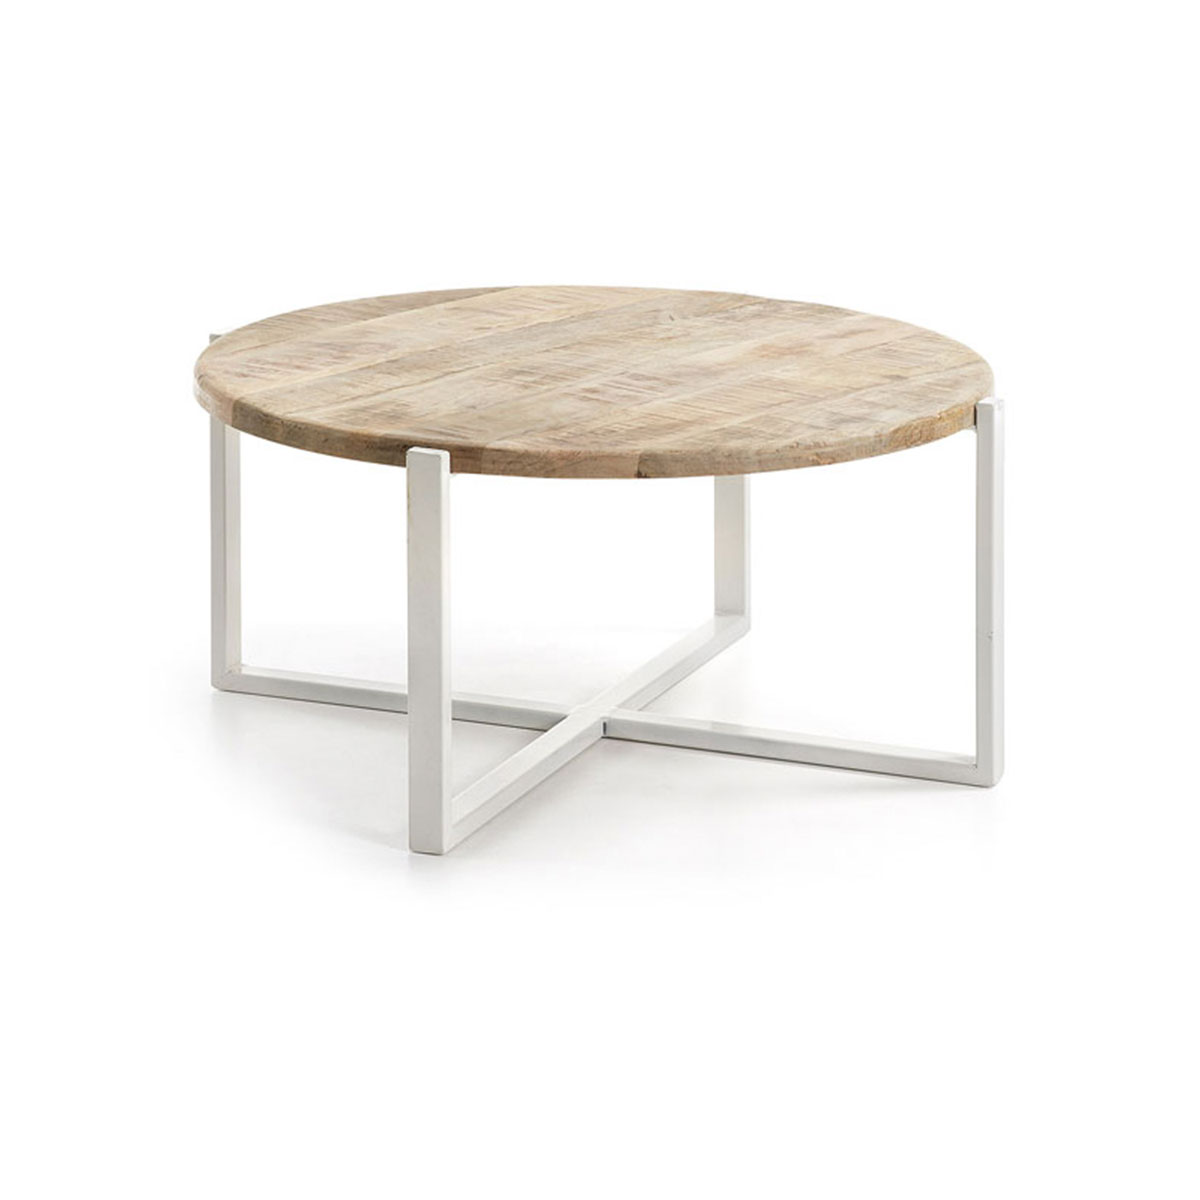 Tavolino Ivan rotondo con struttura in metallo e piano in legno.